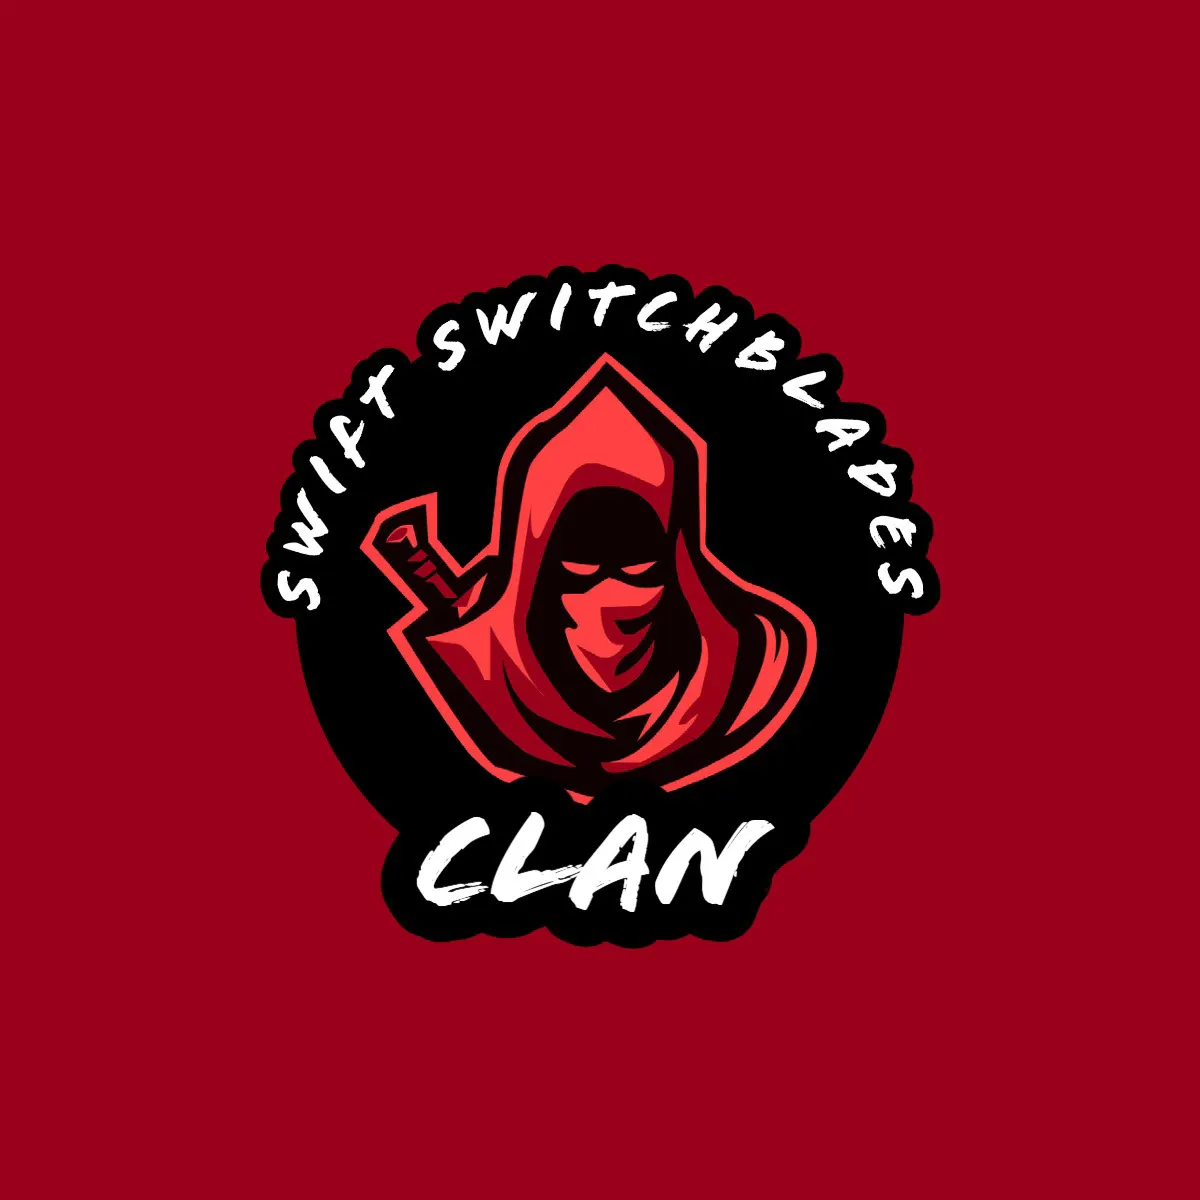 Black and Red Clan Gaming Logo